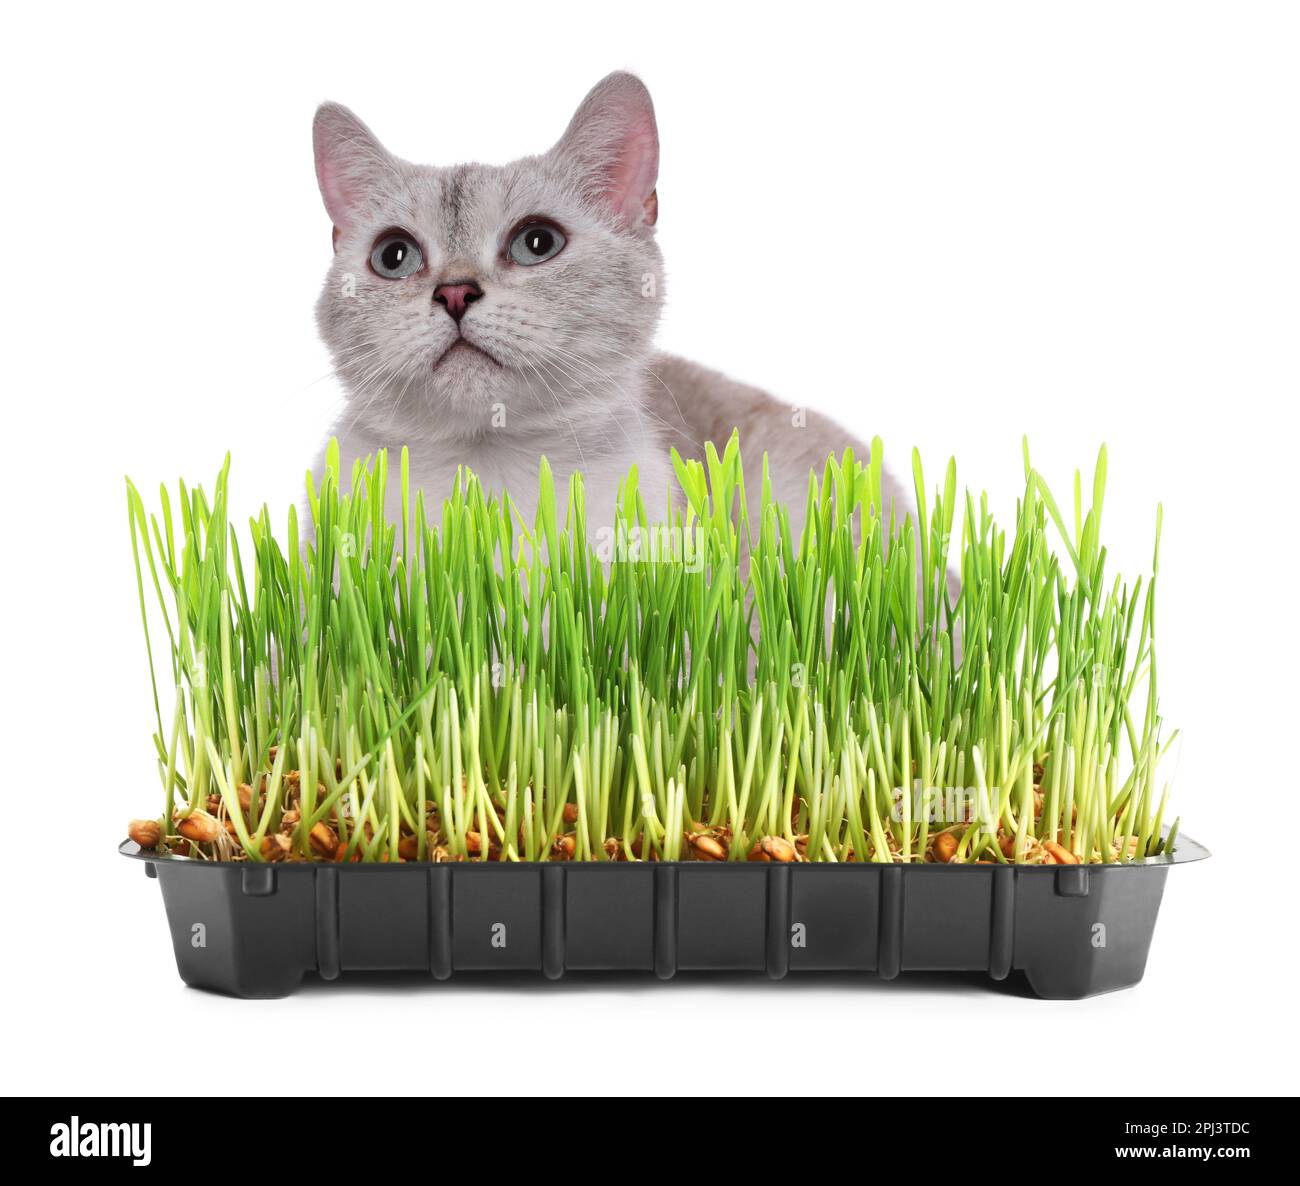 Gato adorable y contenedor de plástico con hierba verde fresca sobre fondo blanco Foto de stock